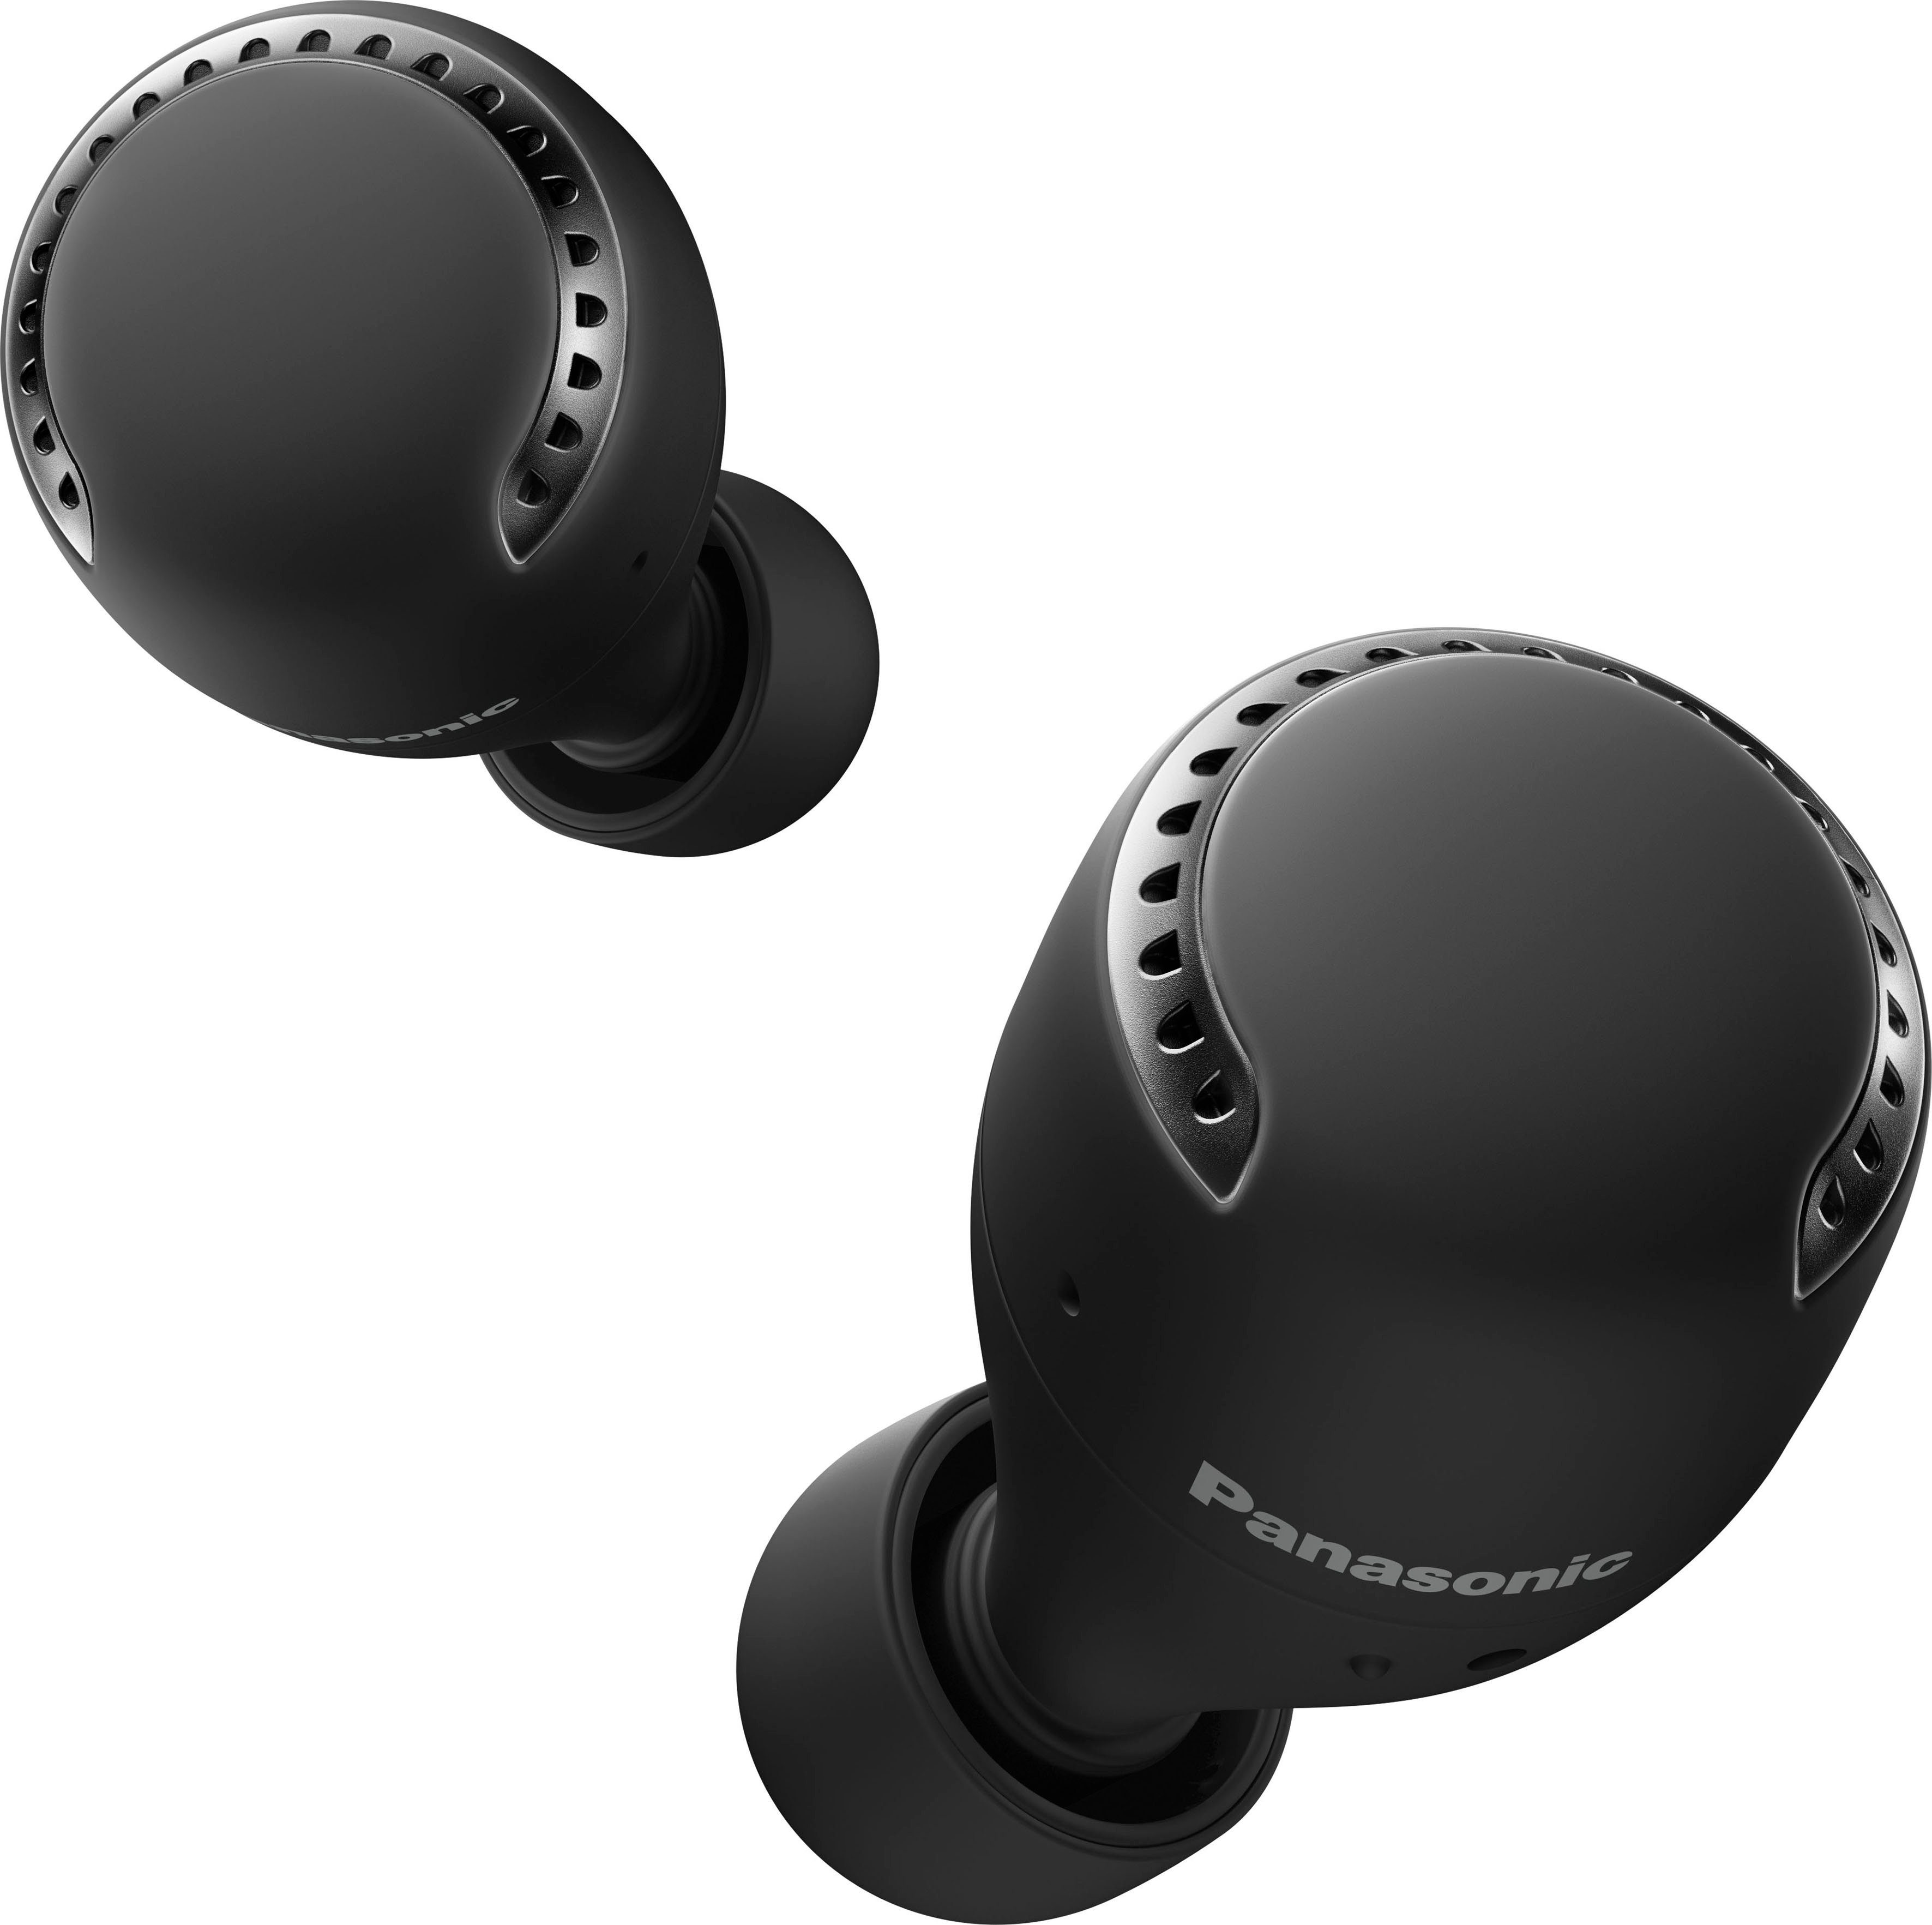 True wireless schwarz Panasonic RZ-S500WE In-Ear-Kopfhörer Bluetooth) (Noise-Cancelling, Wireless, Sprachsteuerung,